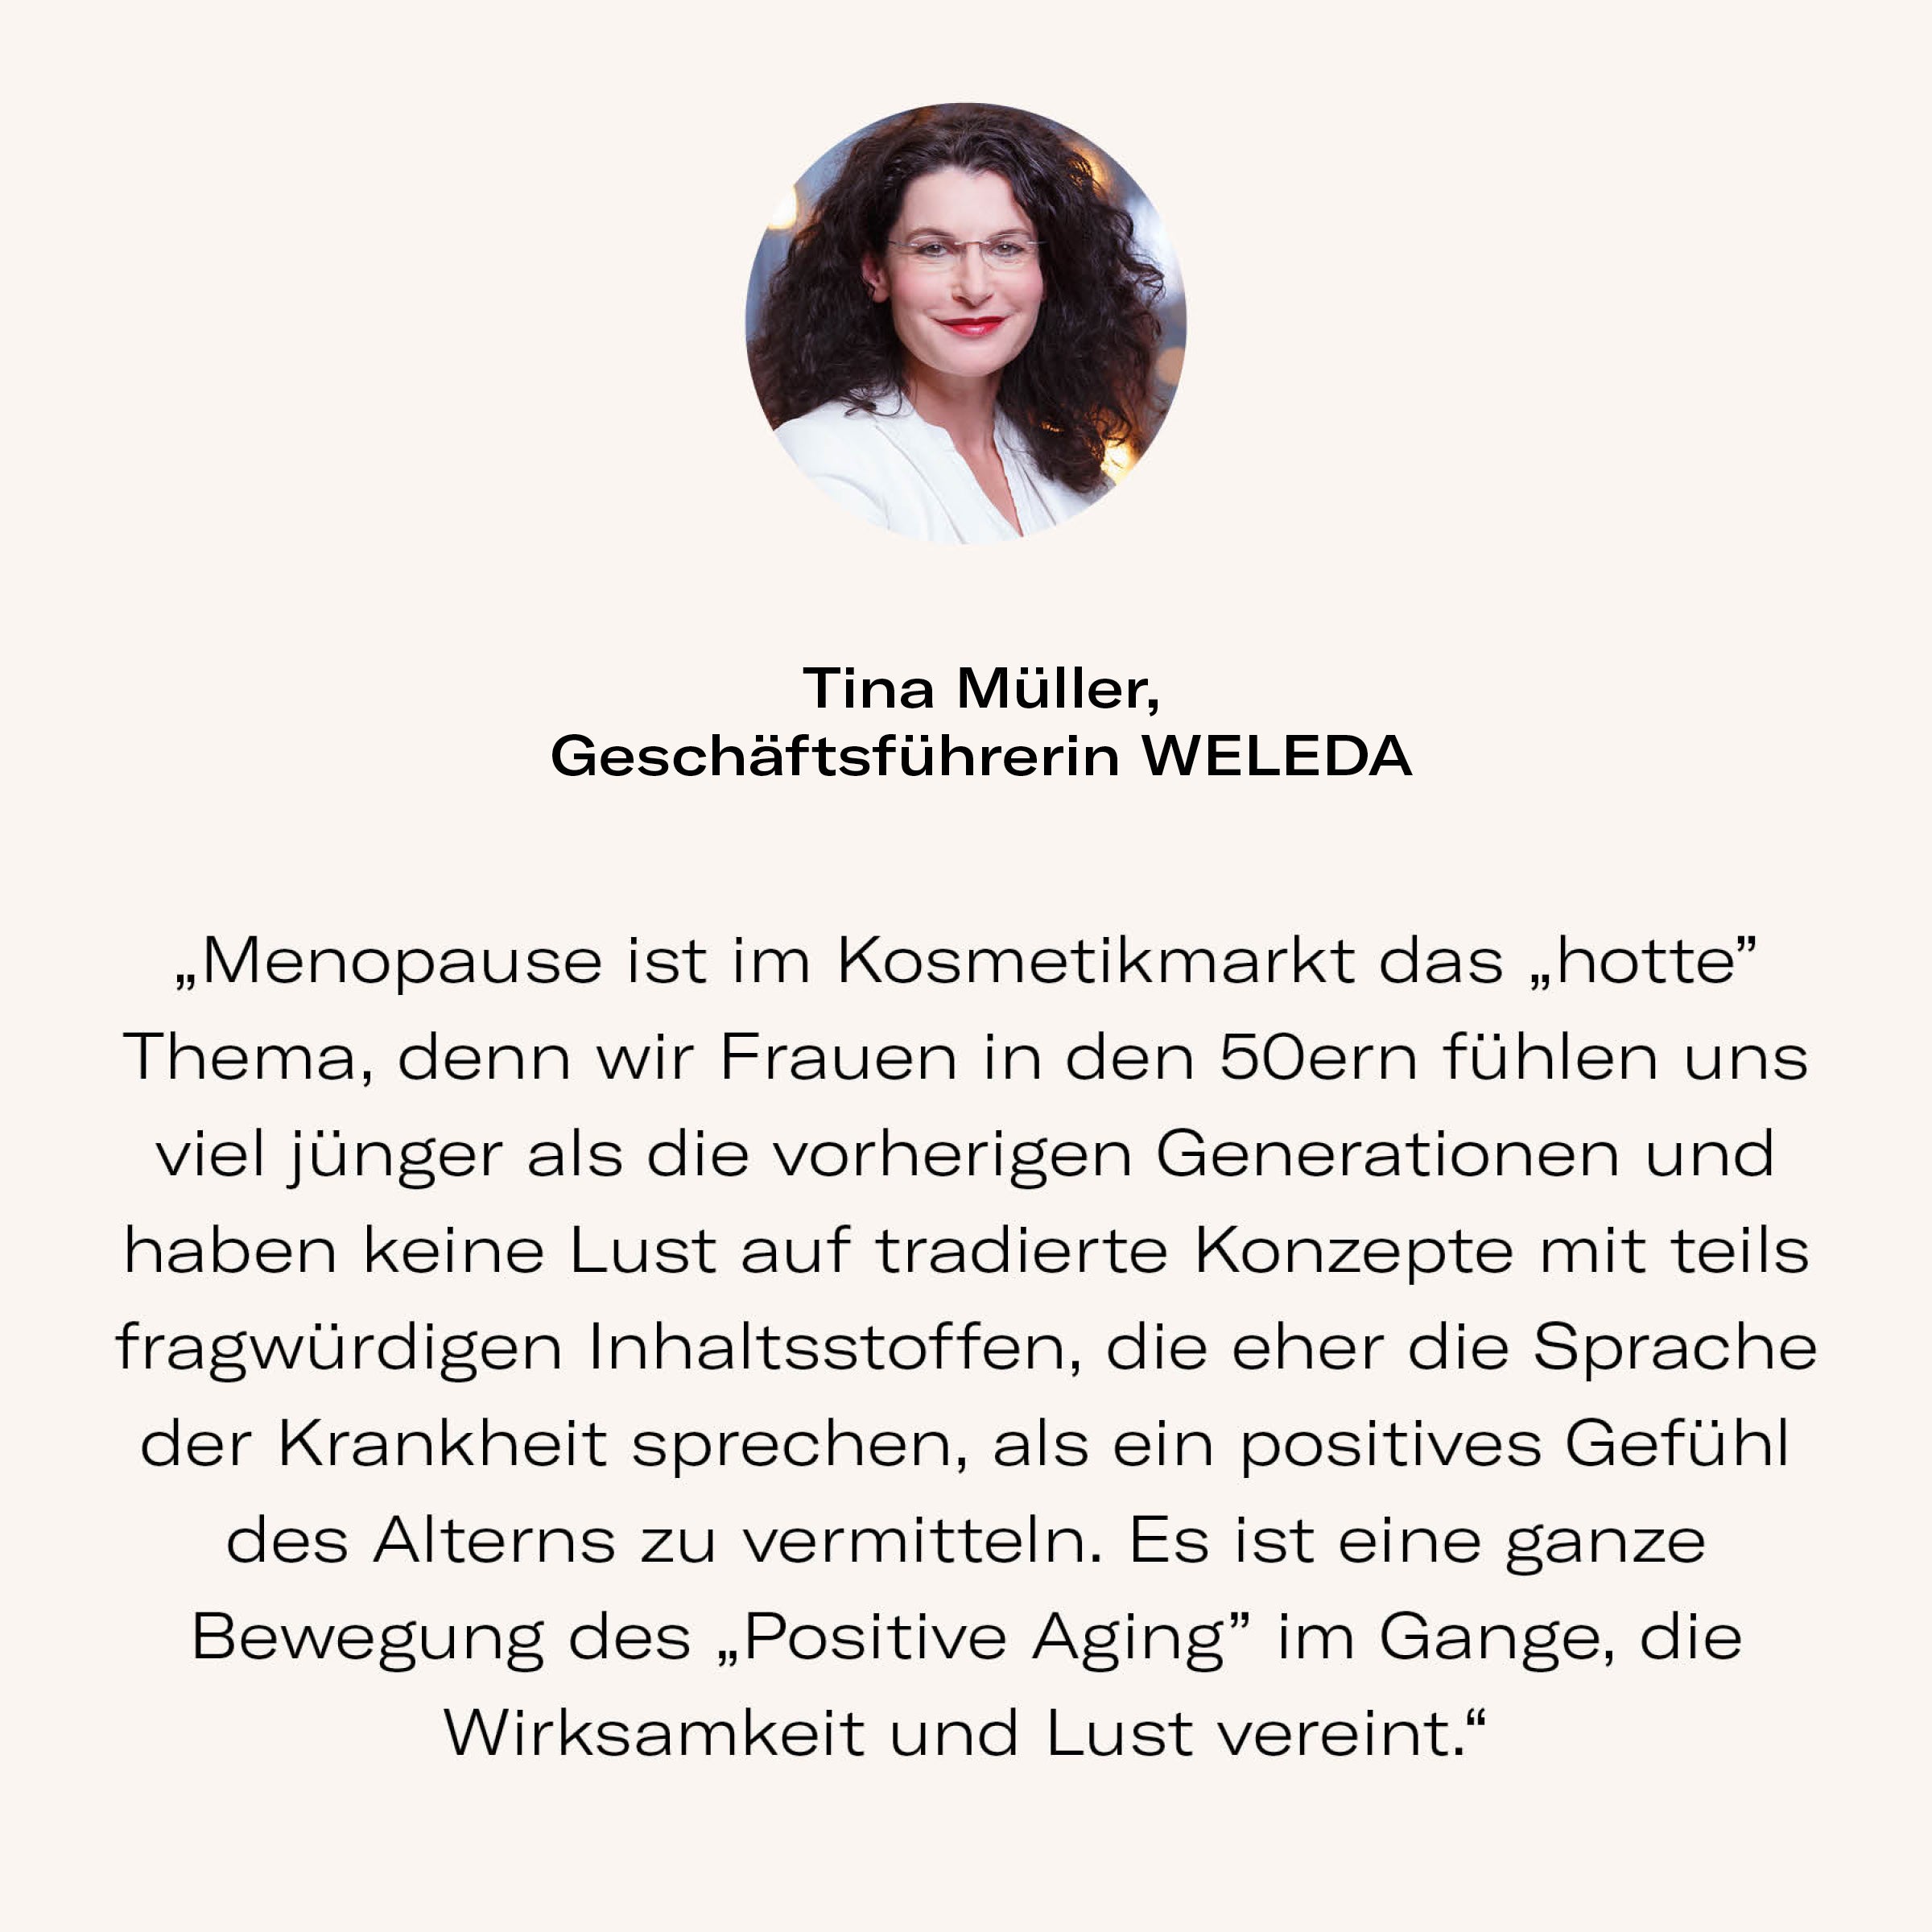 Zitat von Tina Müller, Geschäftsführerin von WELEDA, über die Menopause